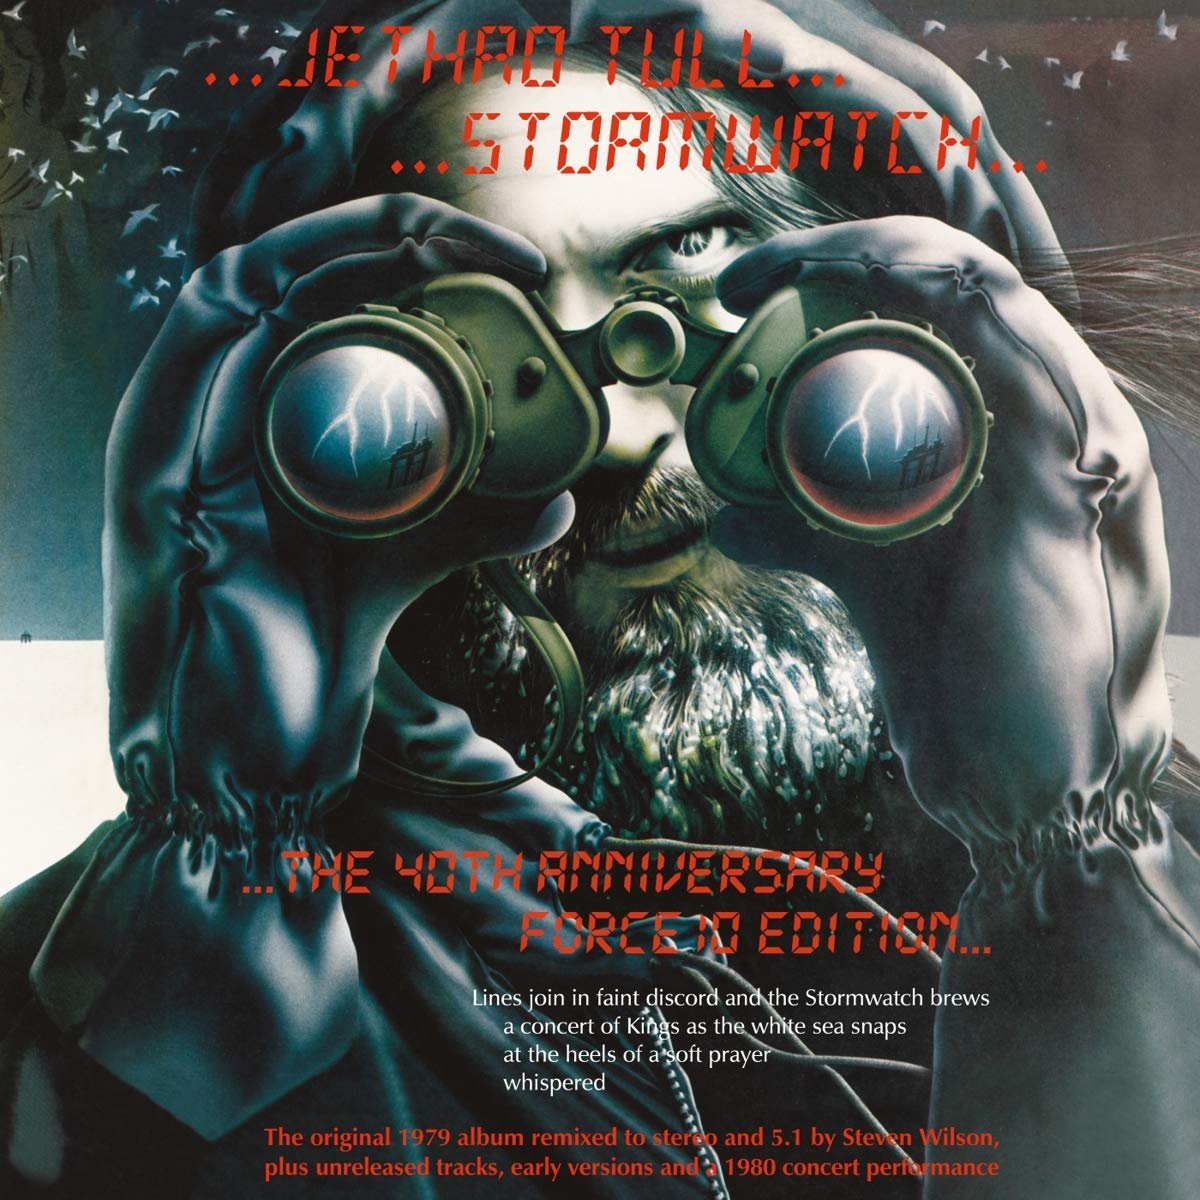 Vinile Jethro Tull - Stormwatch NUOVO SIGILLATO, EDIZIONE DEL 28/02/2020 SUBITO DISPONIBILE